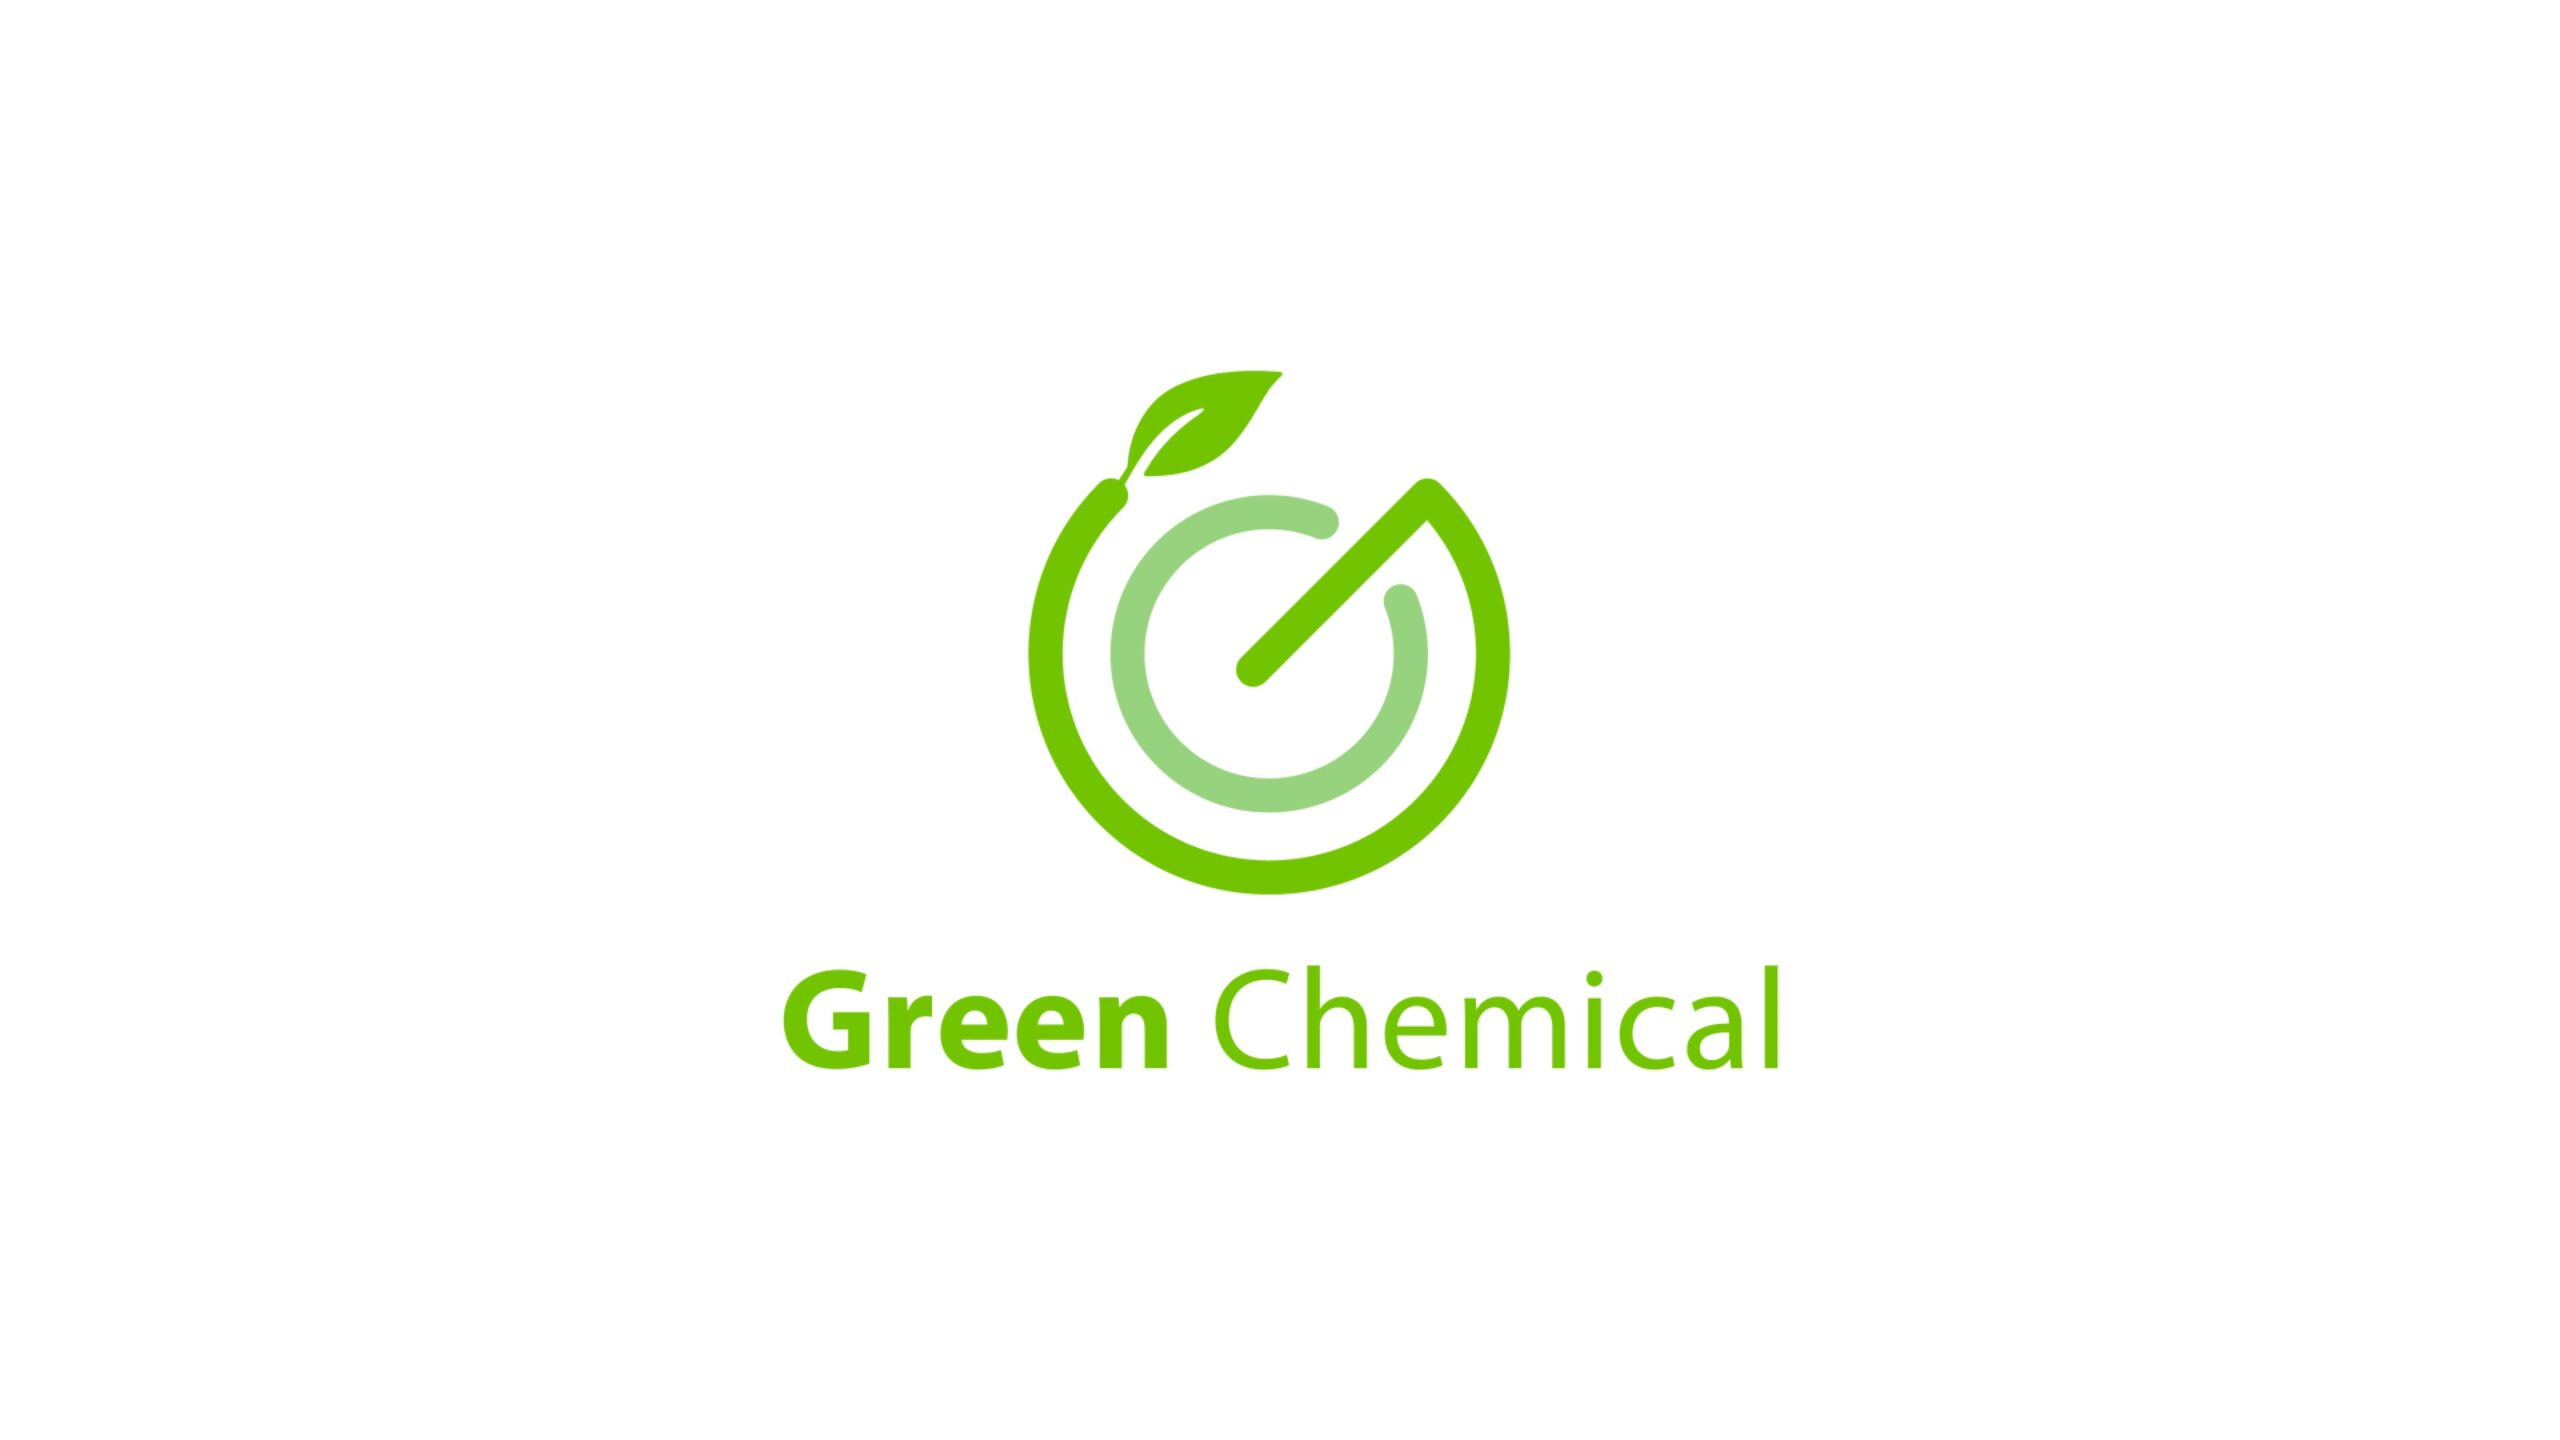 非可食バイオマス原料由来化成品を開発する株式会社グリーンケミカルがプレシリーズAで1.7億円の資金調達